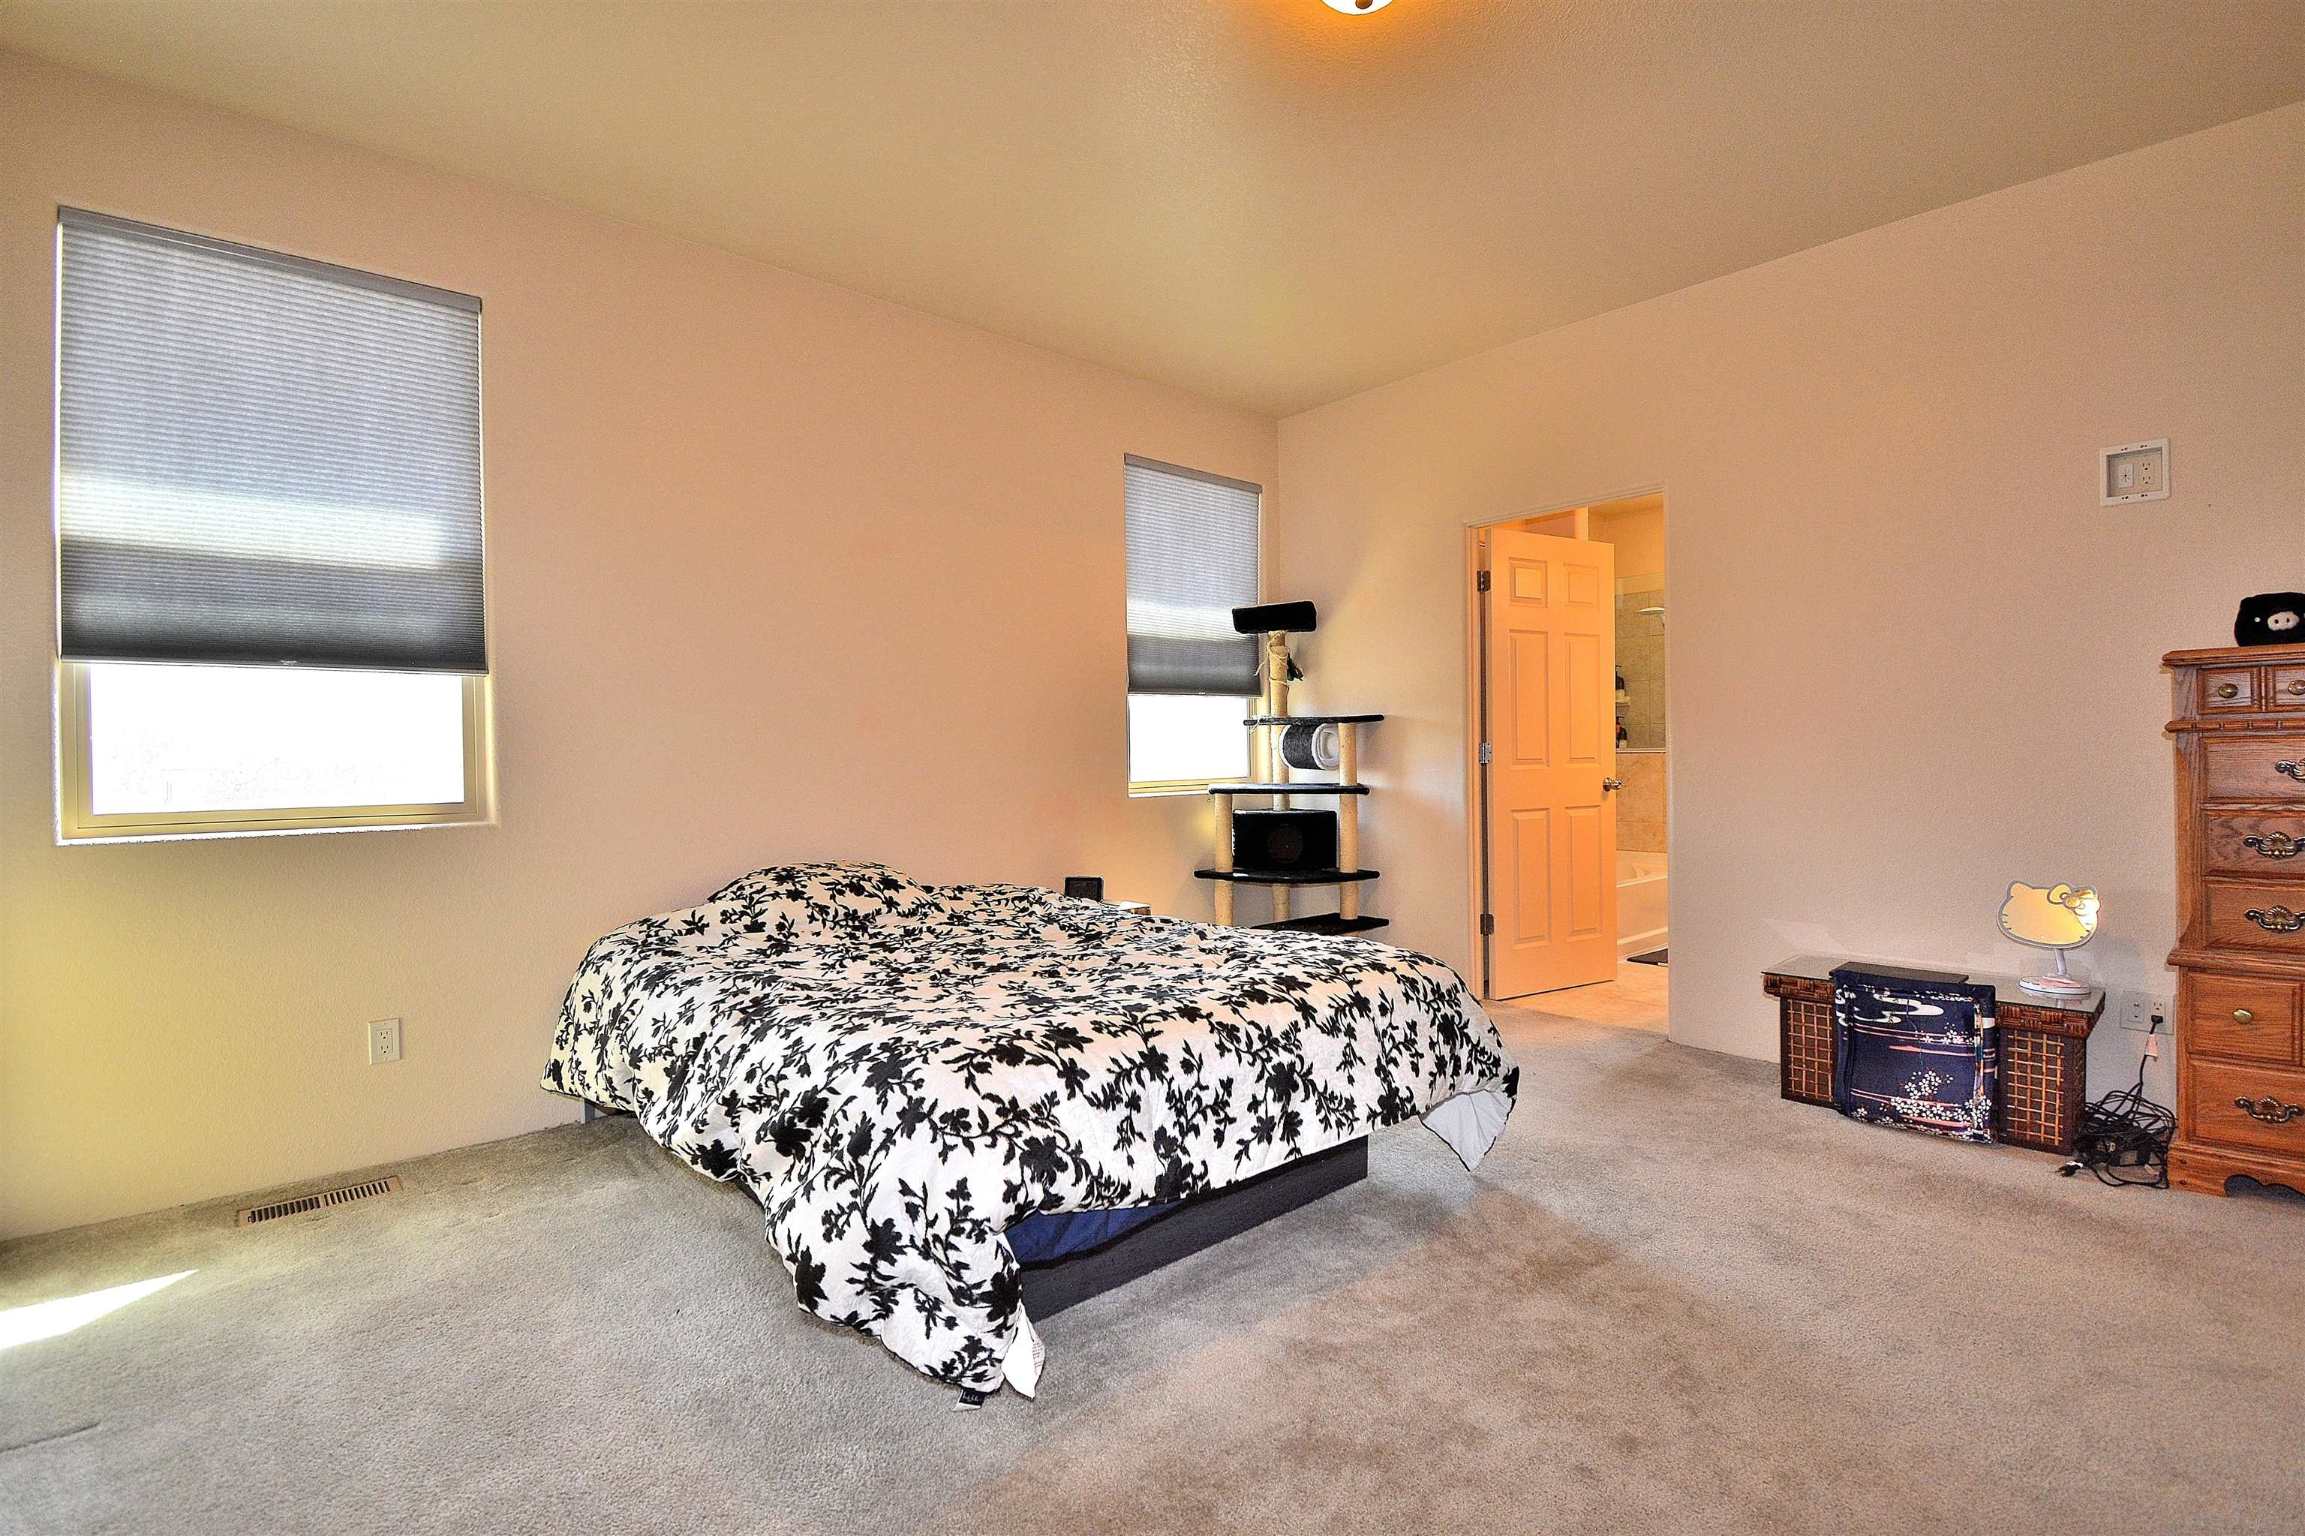 5301 Joshua, Santa Fe, New Mexico 87507, 3 Bedrooms Bedrooms, ,3 BathroomsBathrooms,Residential,For Sale,5301 Joshua,202201490